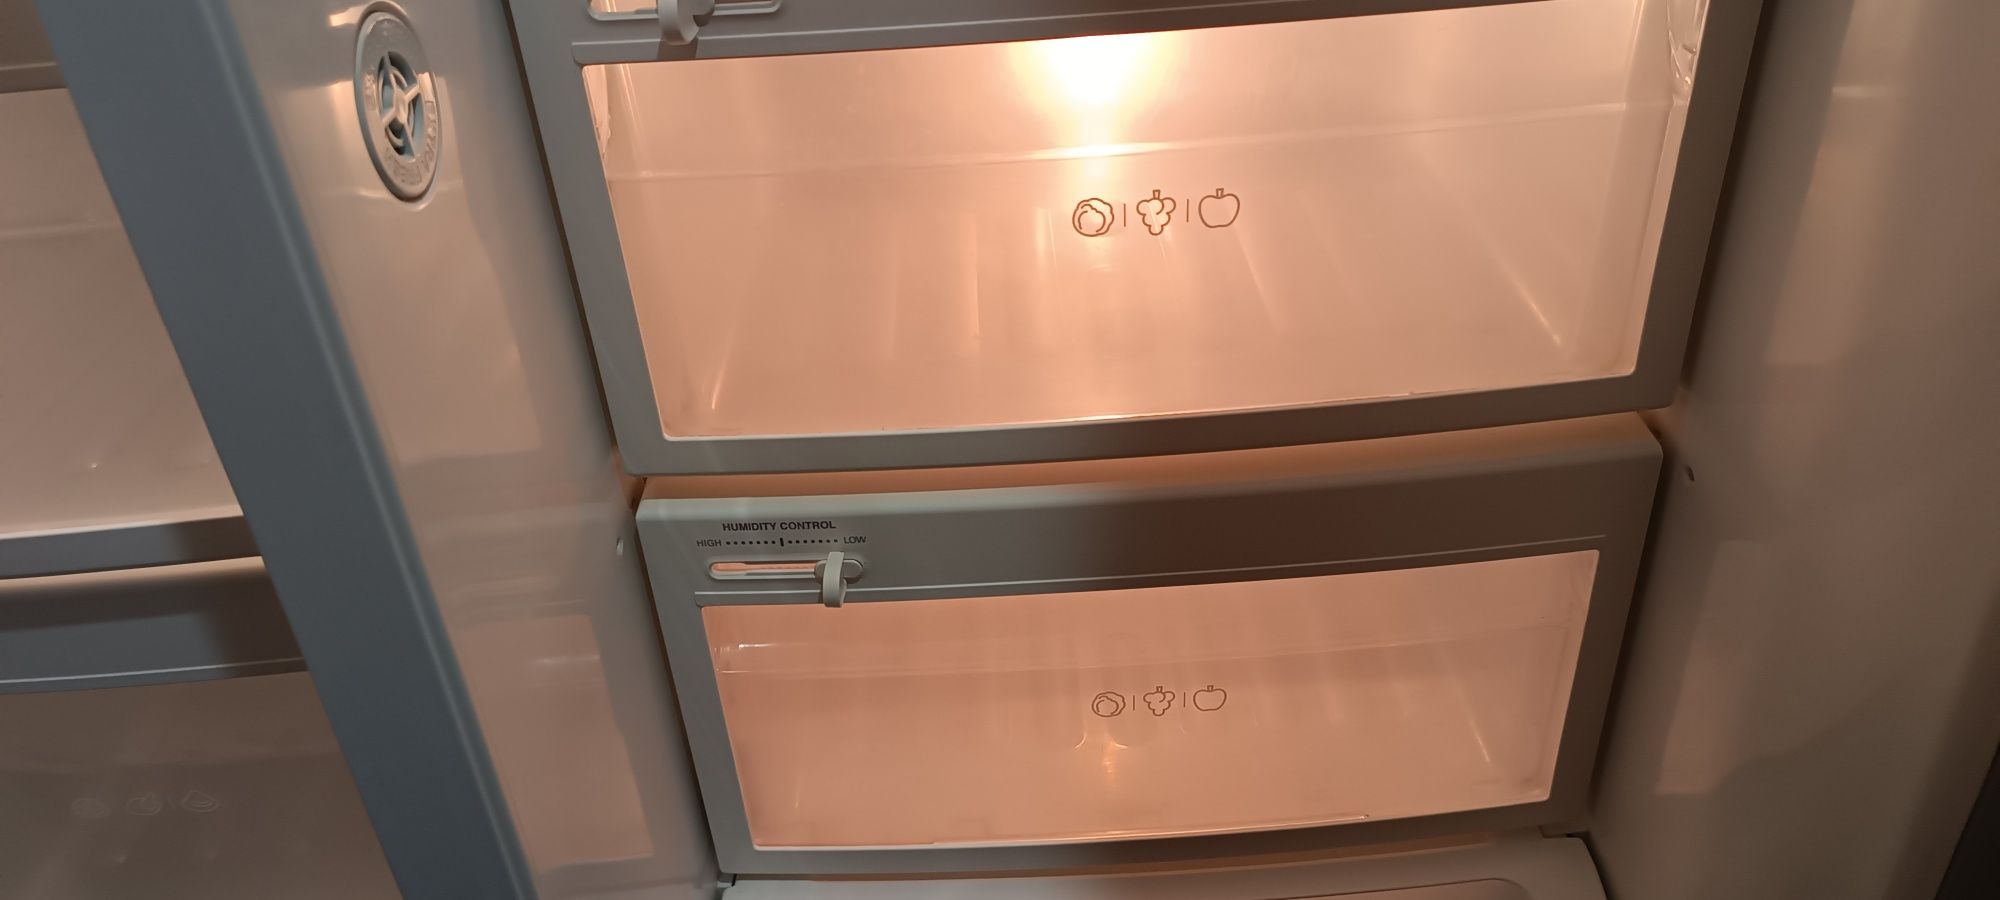 Холодильник LG модель GR-P227ZCMW